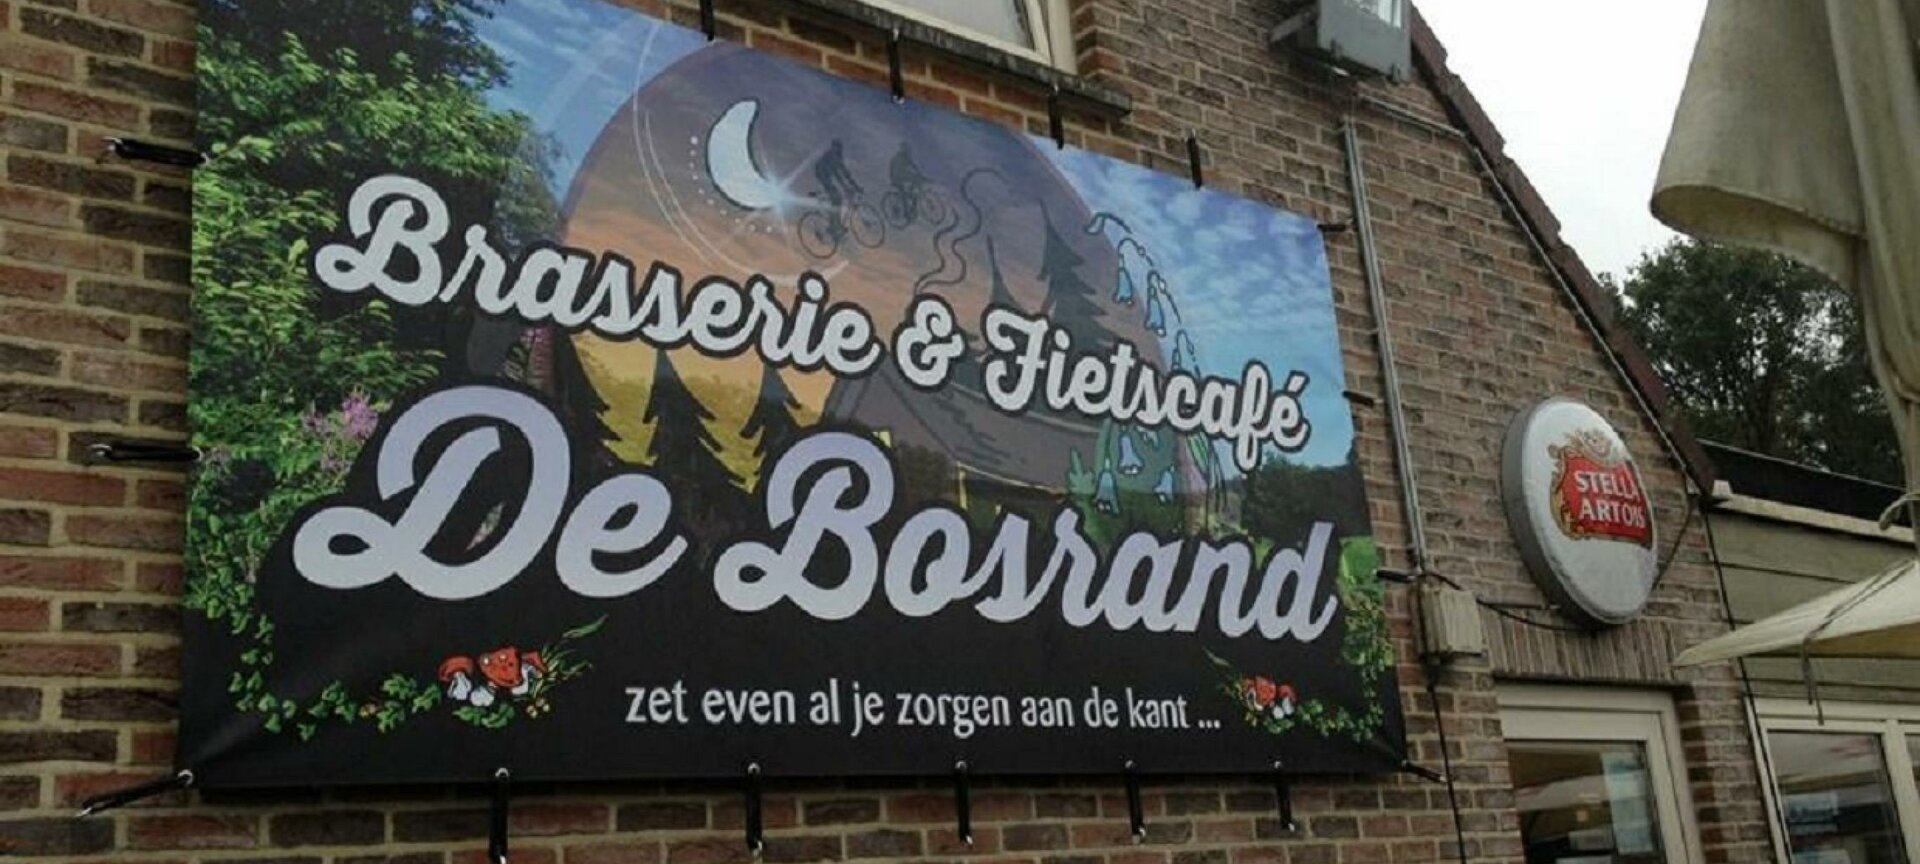 Brasserie en fietscafé Bosrand - Buitengevel